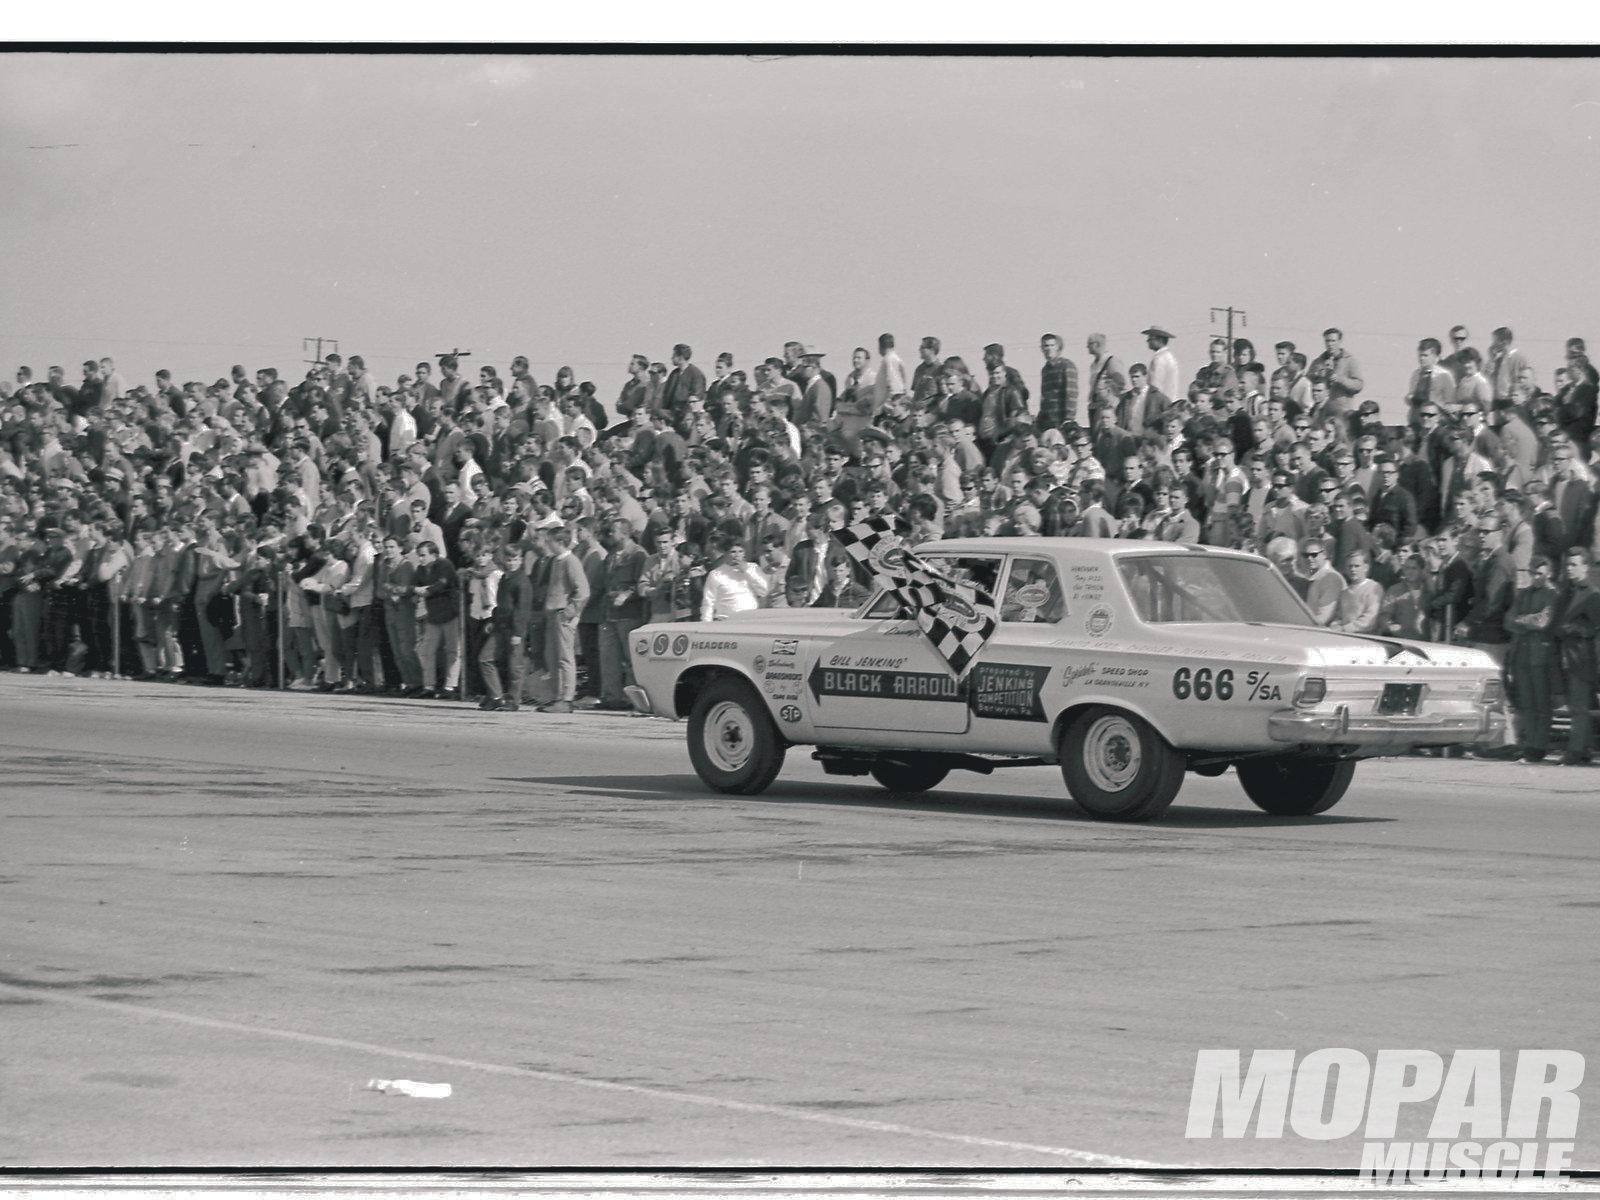 Vintage Nhra Wallpaper Mopar Drag Racing